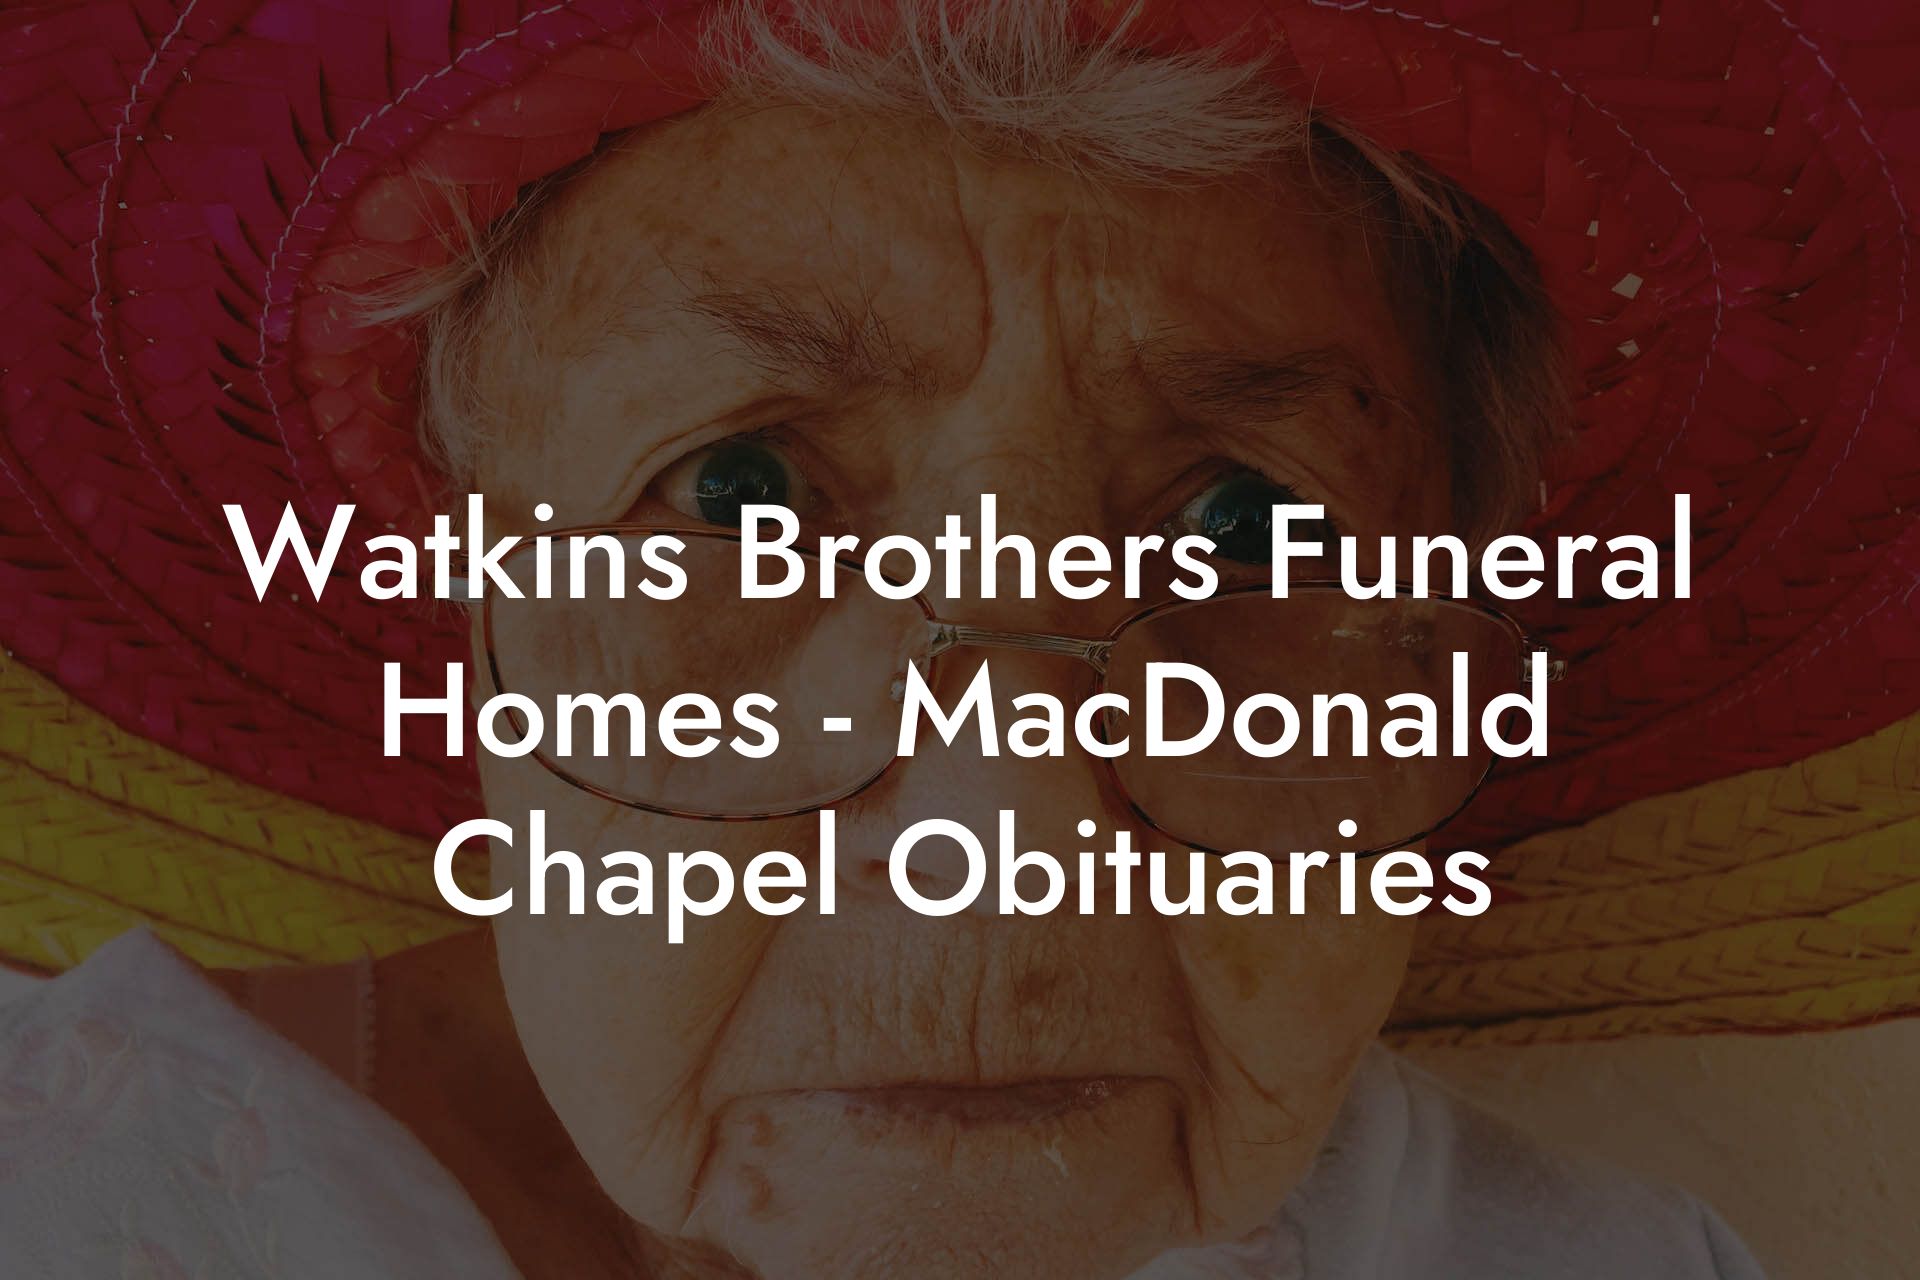 Watkins Brothers Funeral Homes - MacDonald Chapel Obituaries